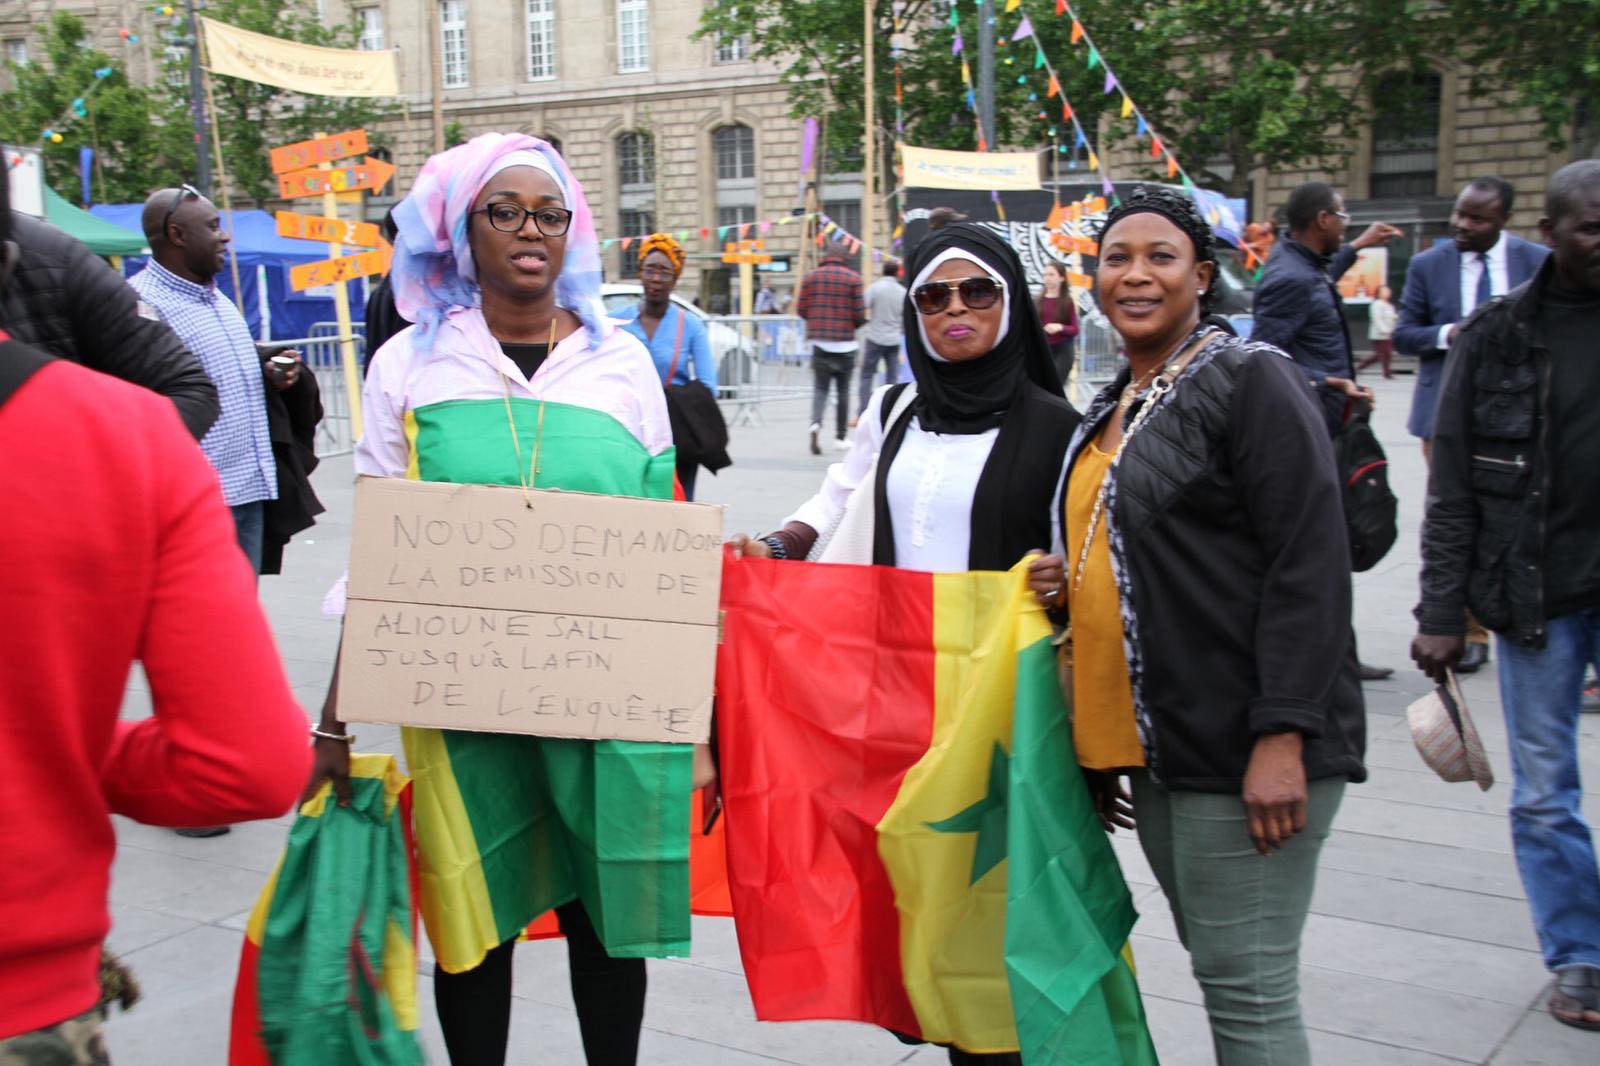 PHOTOS - "AAR LI NU BOOK" - Rassemblement pacifique de la Plateforme à Paris